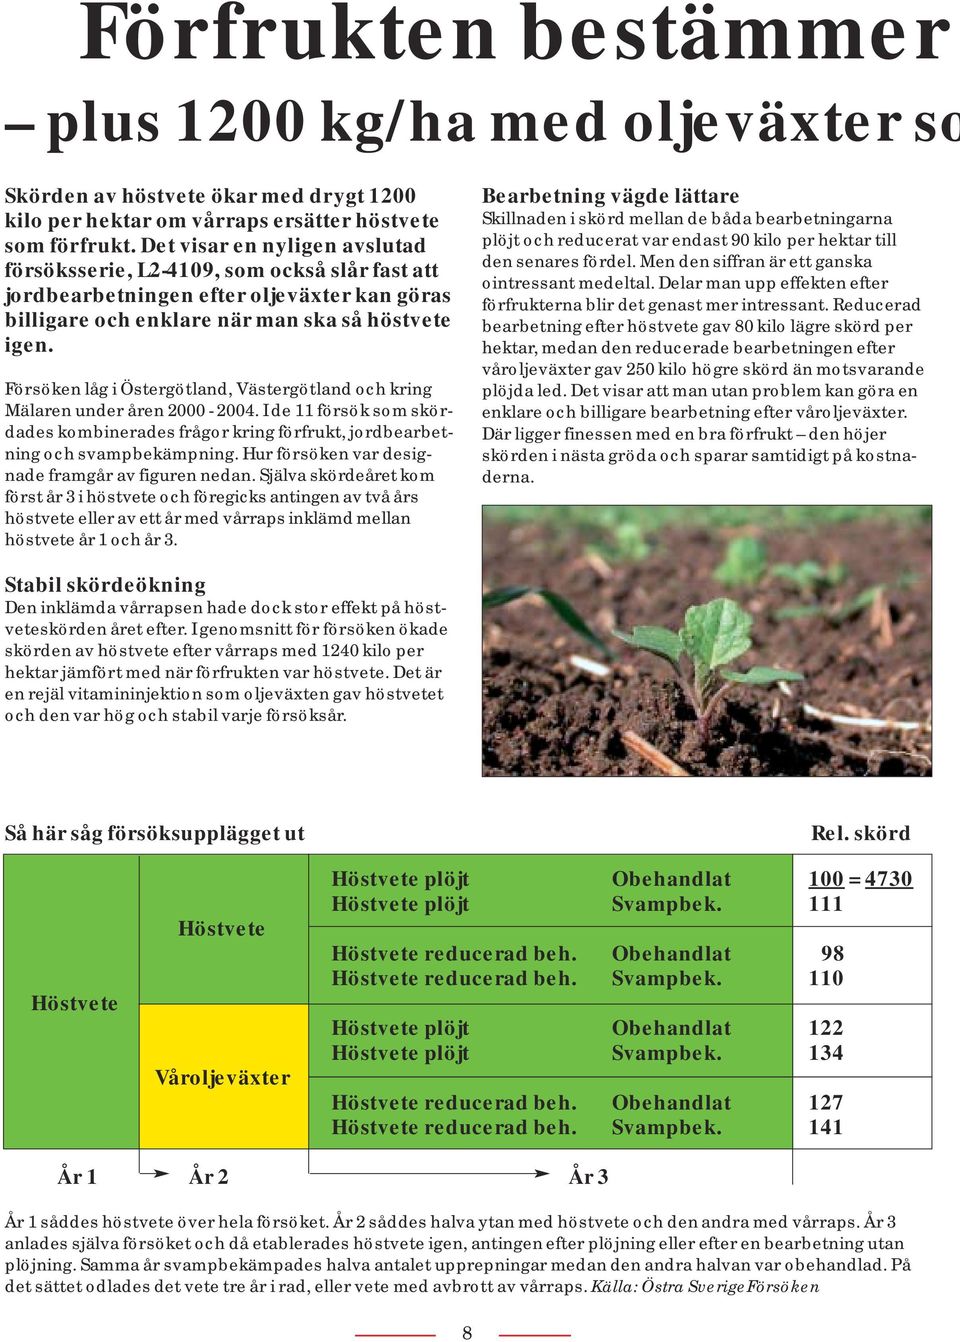 Försöken låg i Östergötland, Västergötland och kring Mälaren under åren 2000-2004. I de 11 försök som skördades kombinerades frågor kring förfrukt, jordbearbetning och svampbekämpning.